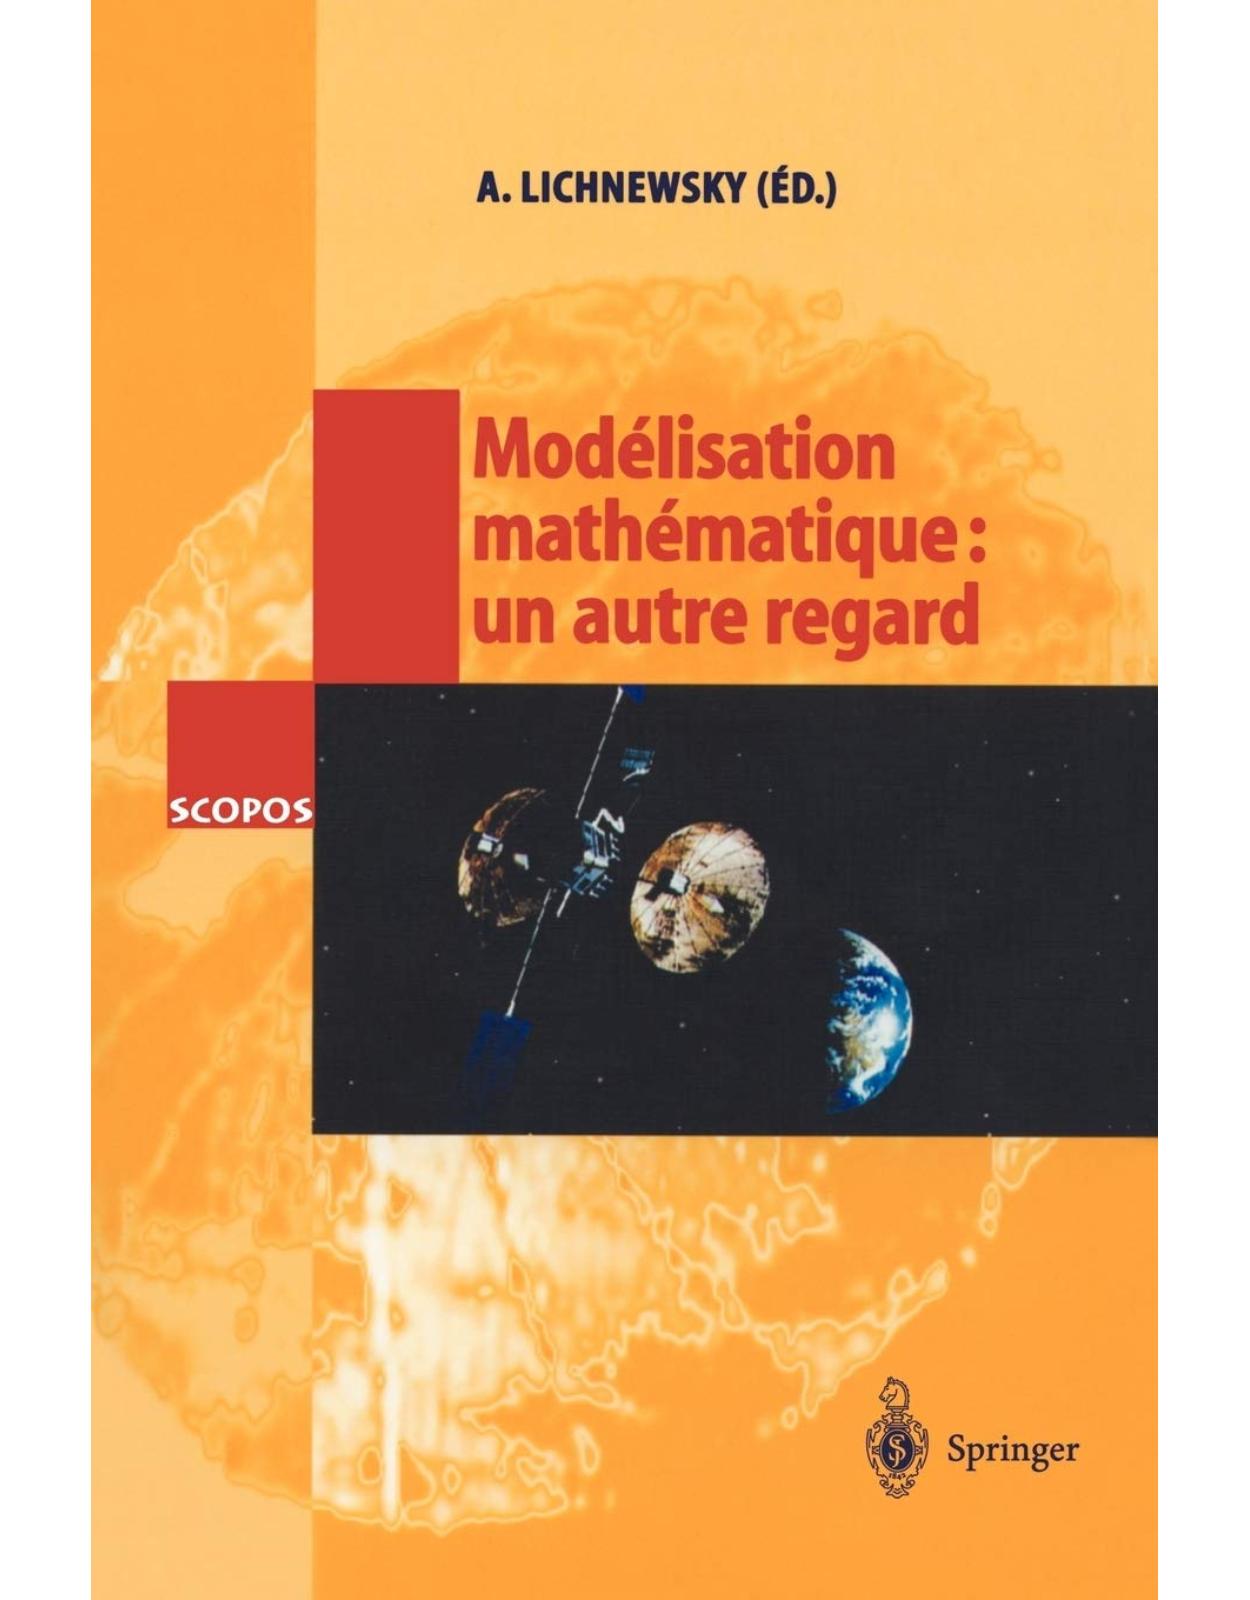 Modélisation mathématique: un autre regard (SCOPOS) (French Edition)